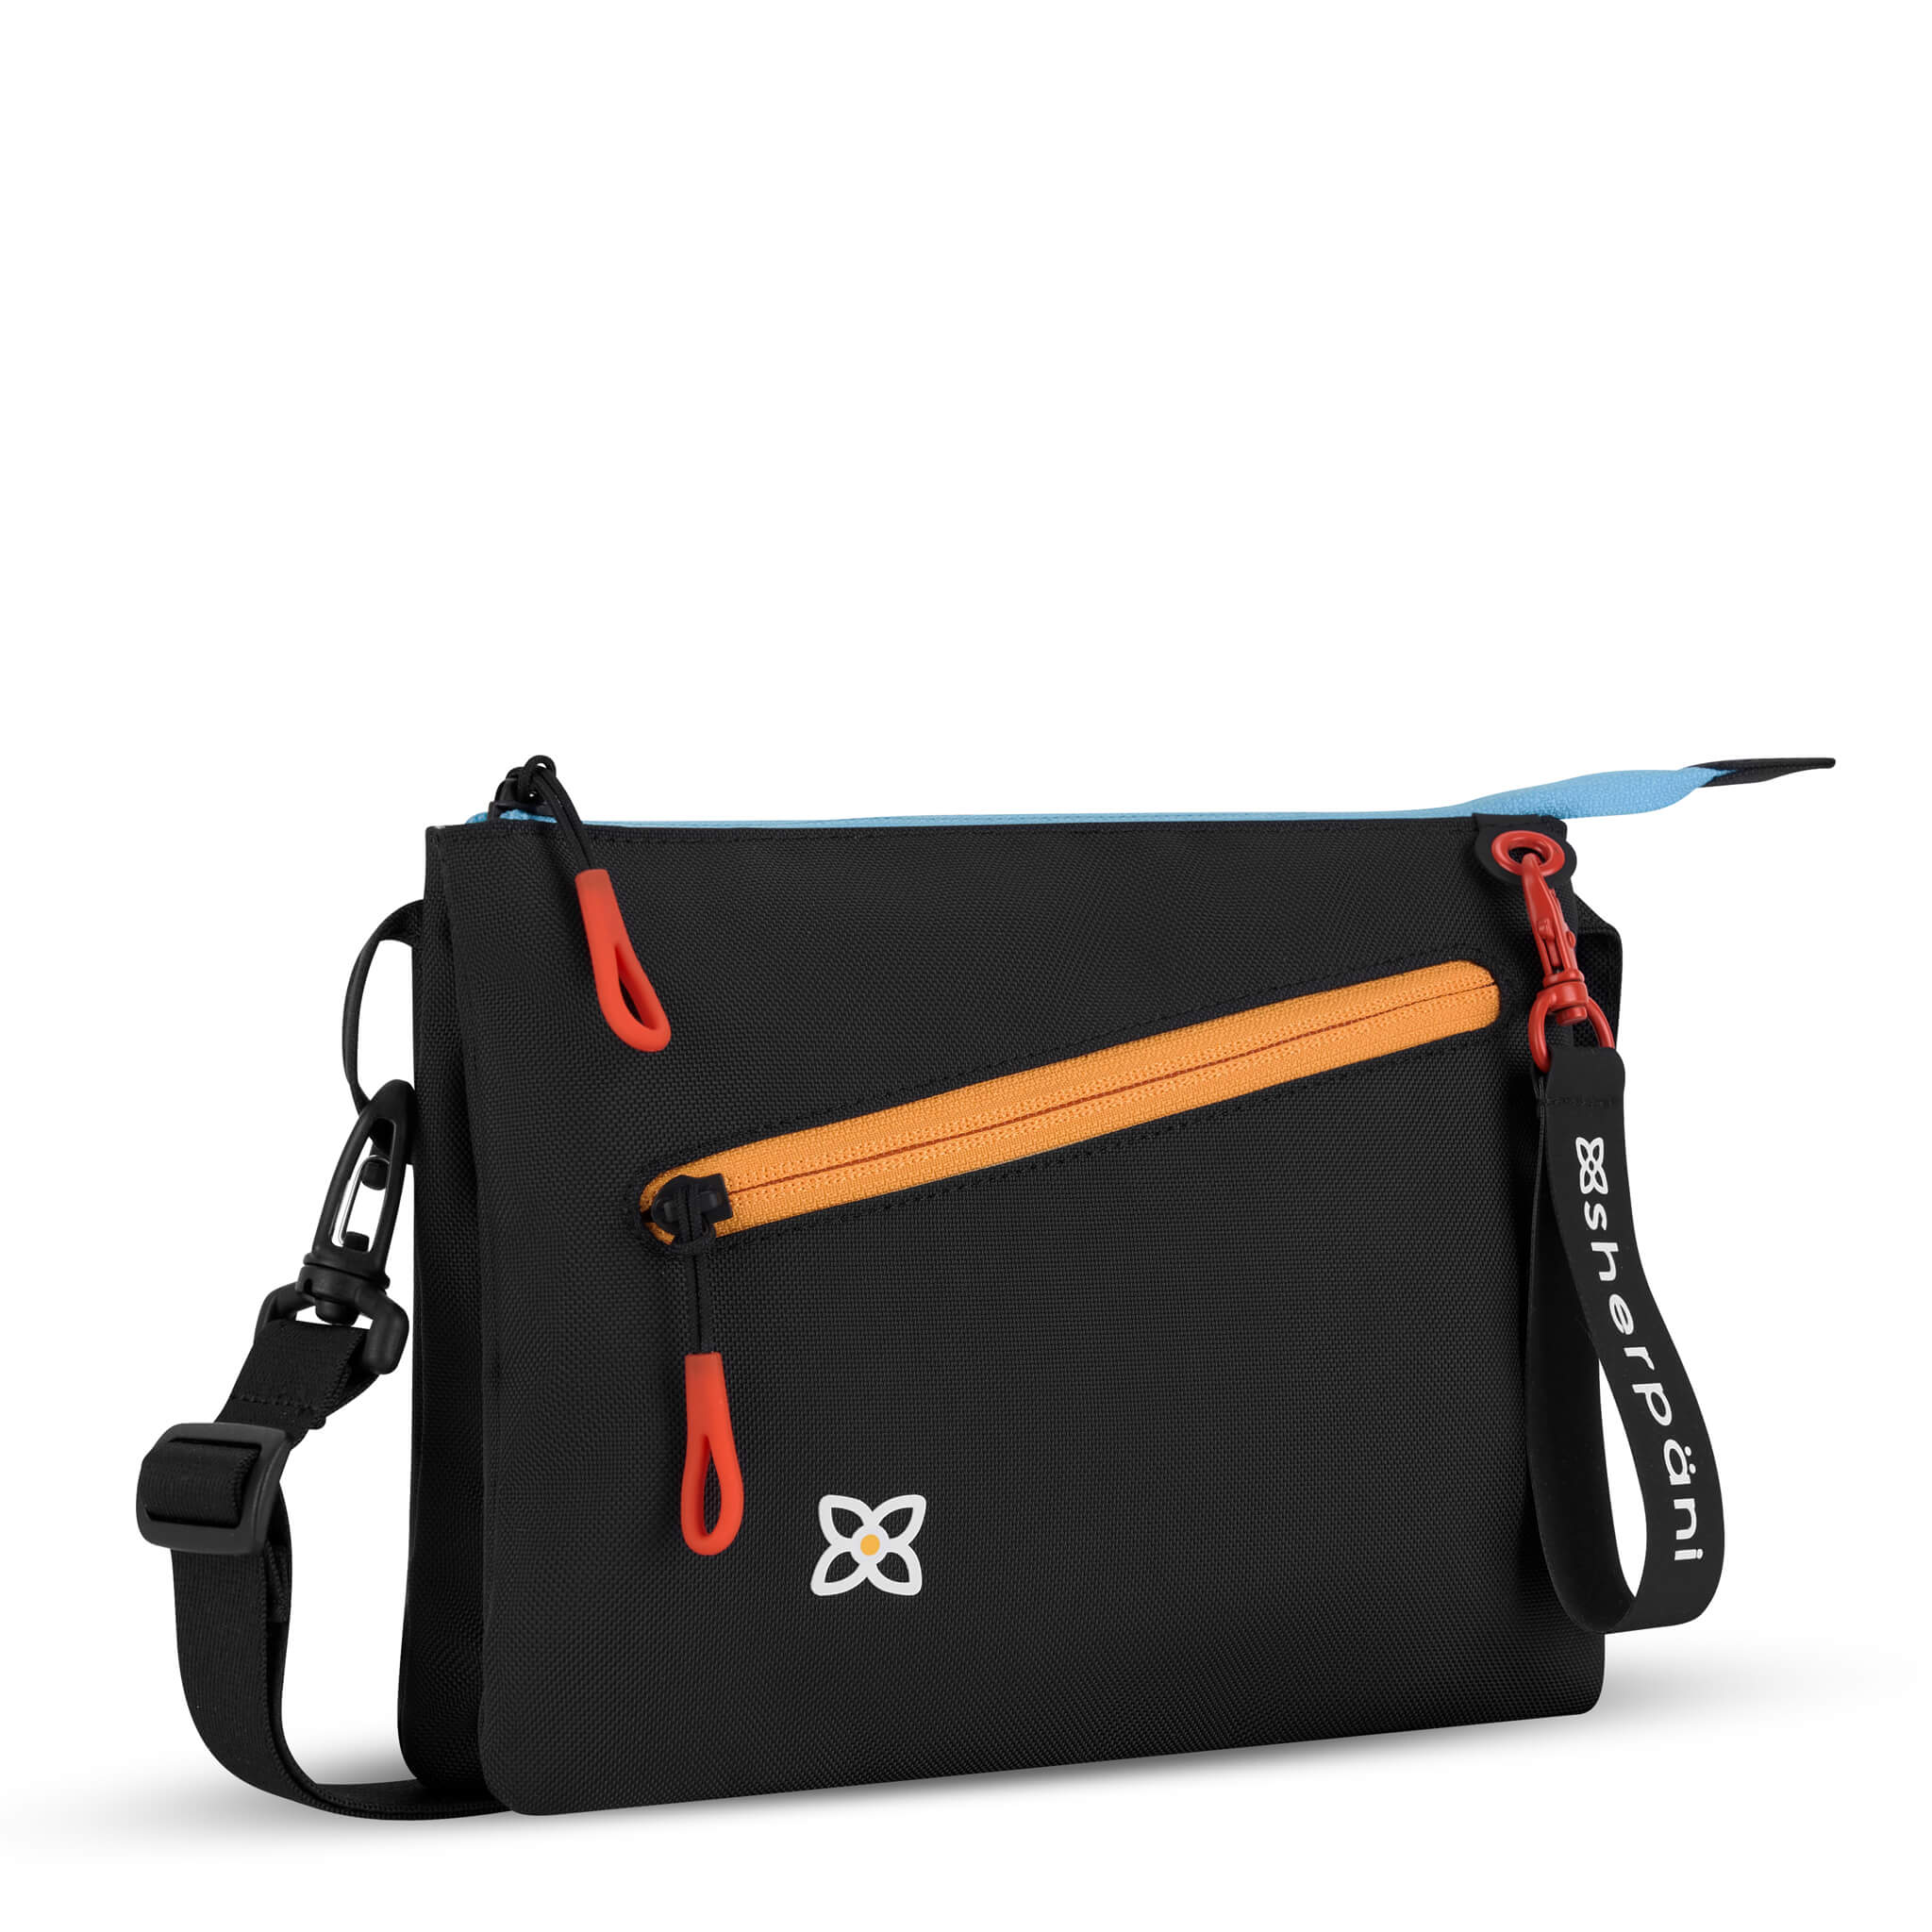 Detachable Adjustable Bag Straps Crossbody Bag Straps Bag 